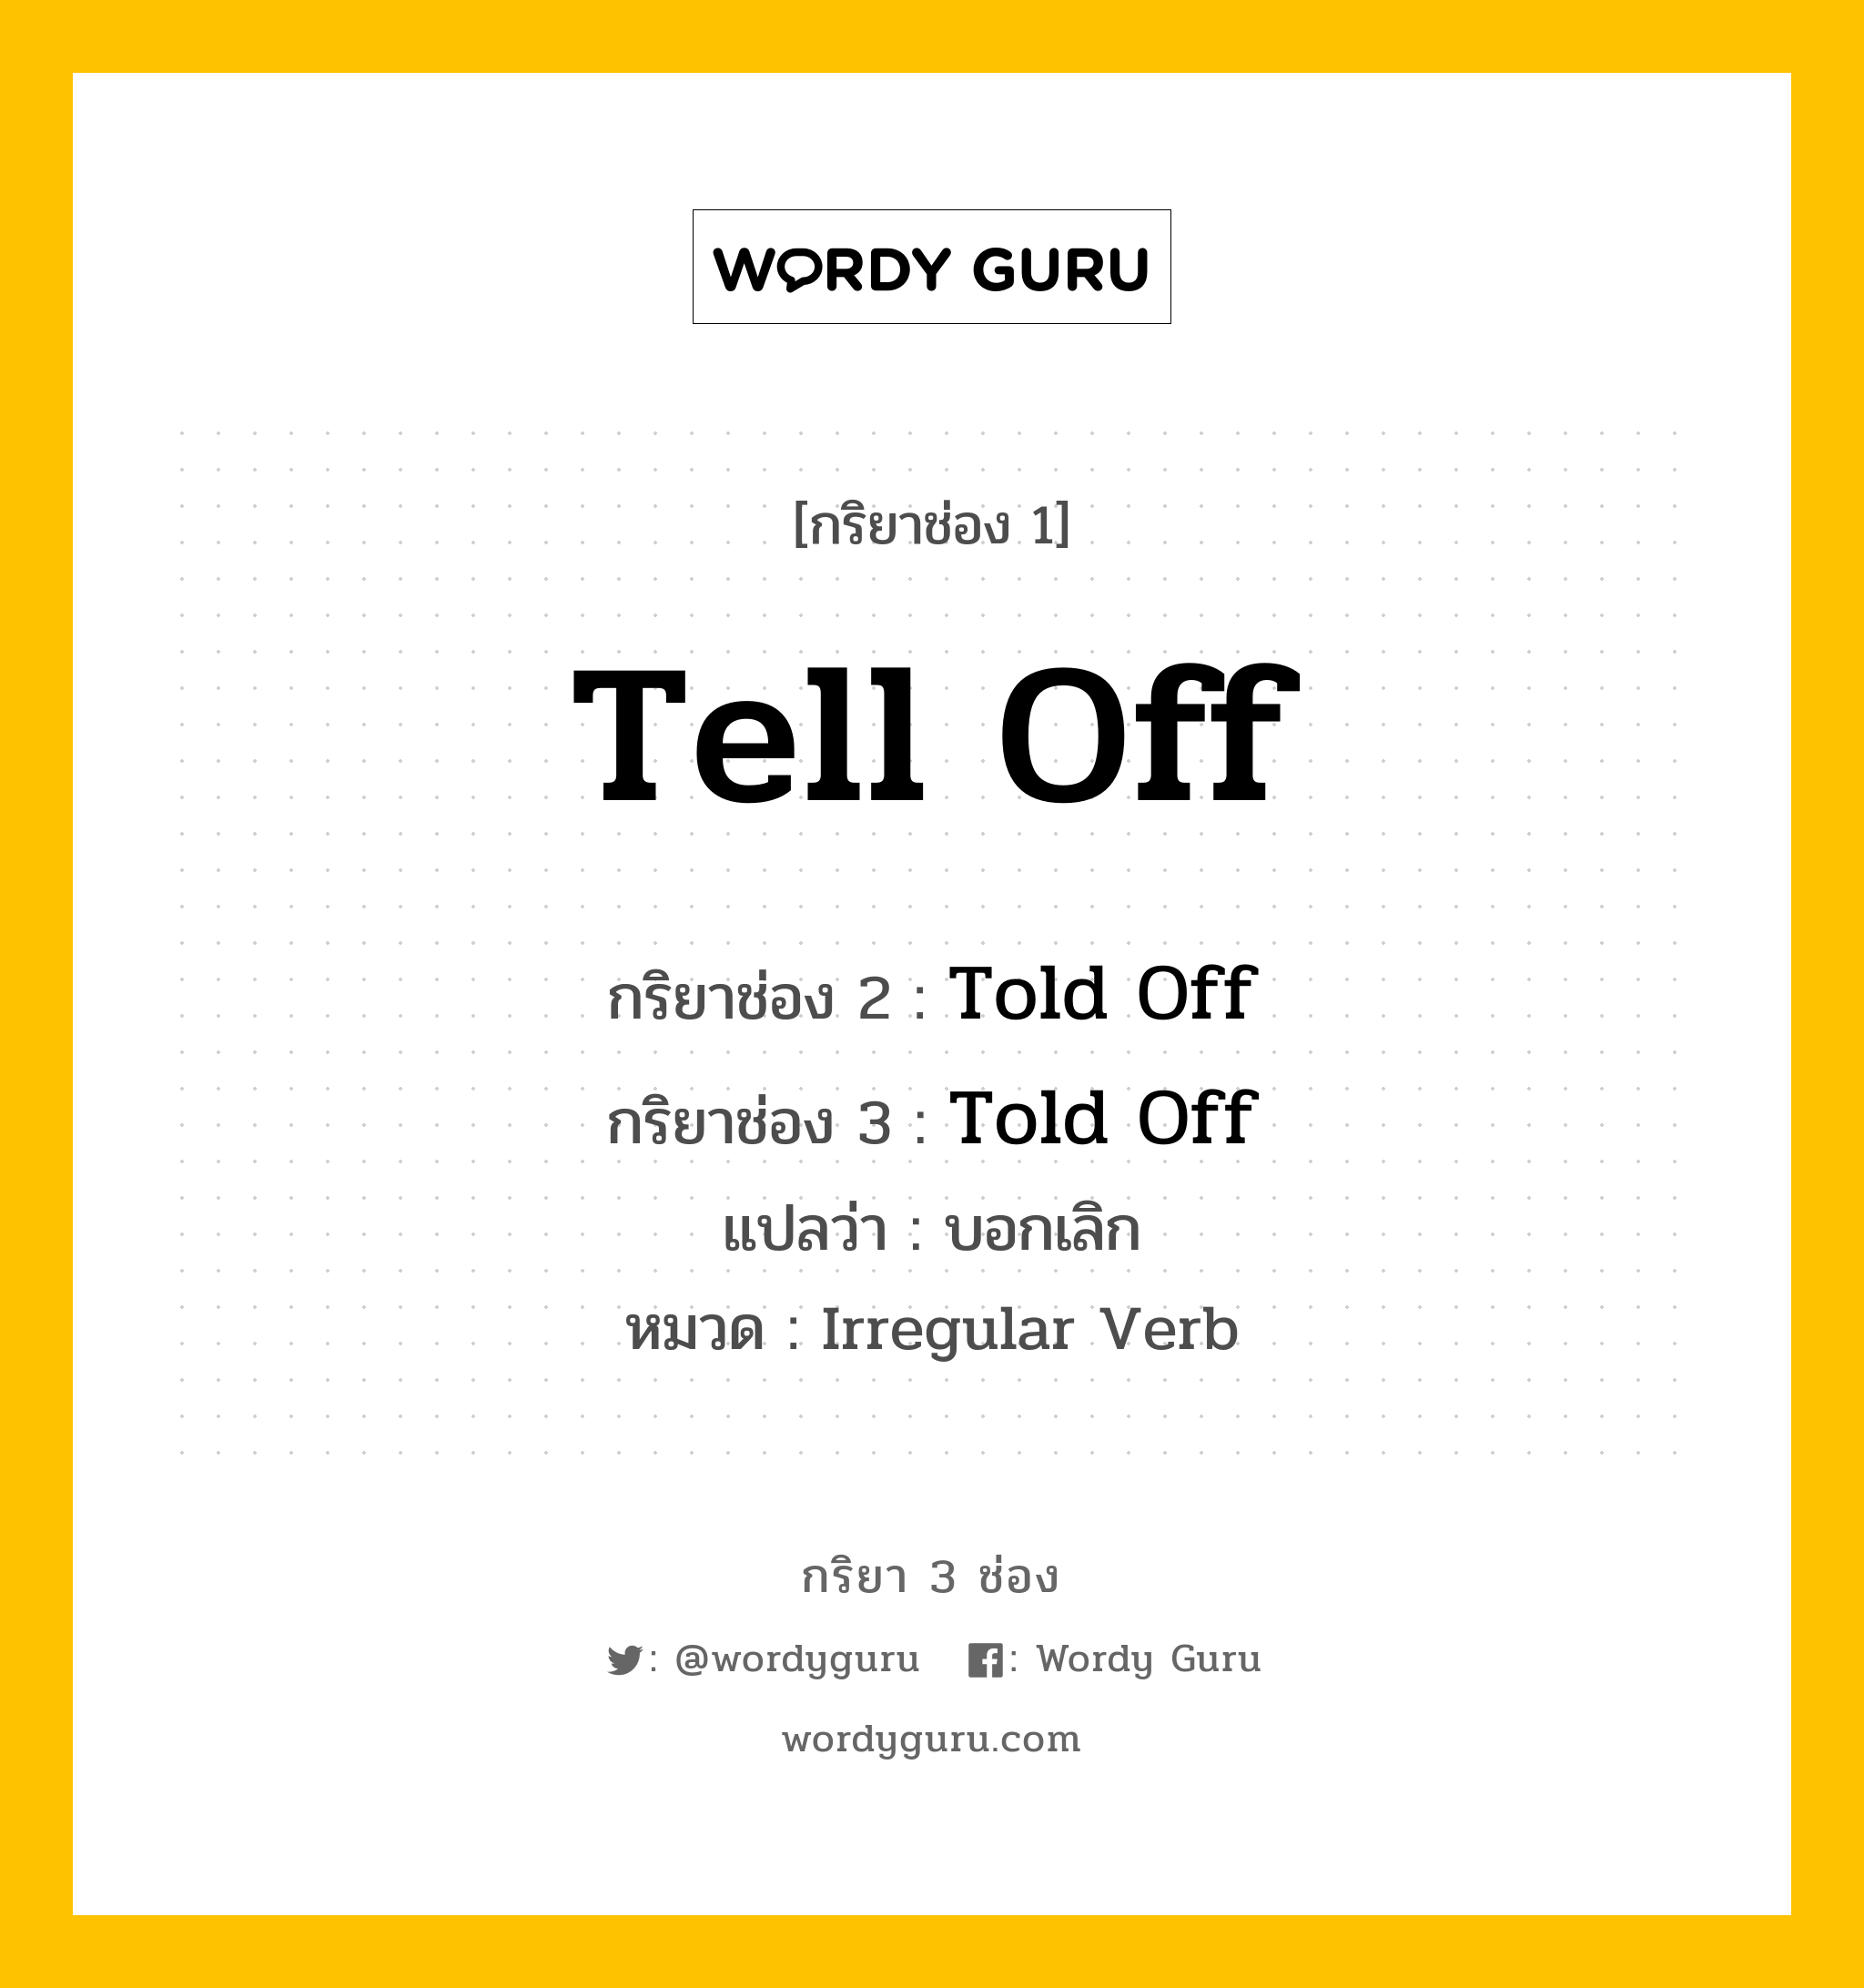 กริยา 3 ช่อง: Tell Off ช่อง 2 Tell Off ช่อง 3 คืออะไร, กริยาช่อง 1 Tell Off กริยาช่อง 2 Told Off กริยาช่อง 3 Told Off แปลว่า บอกเลิก หมวด Irregular Verb หมวด Irregular Verb